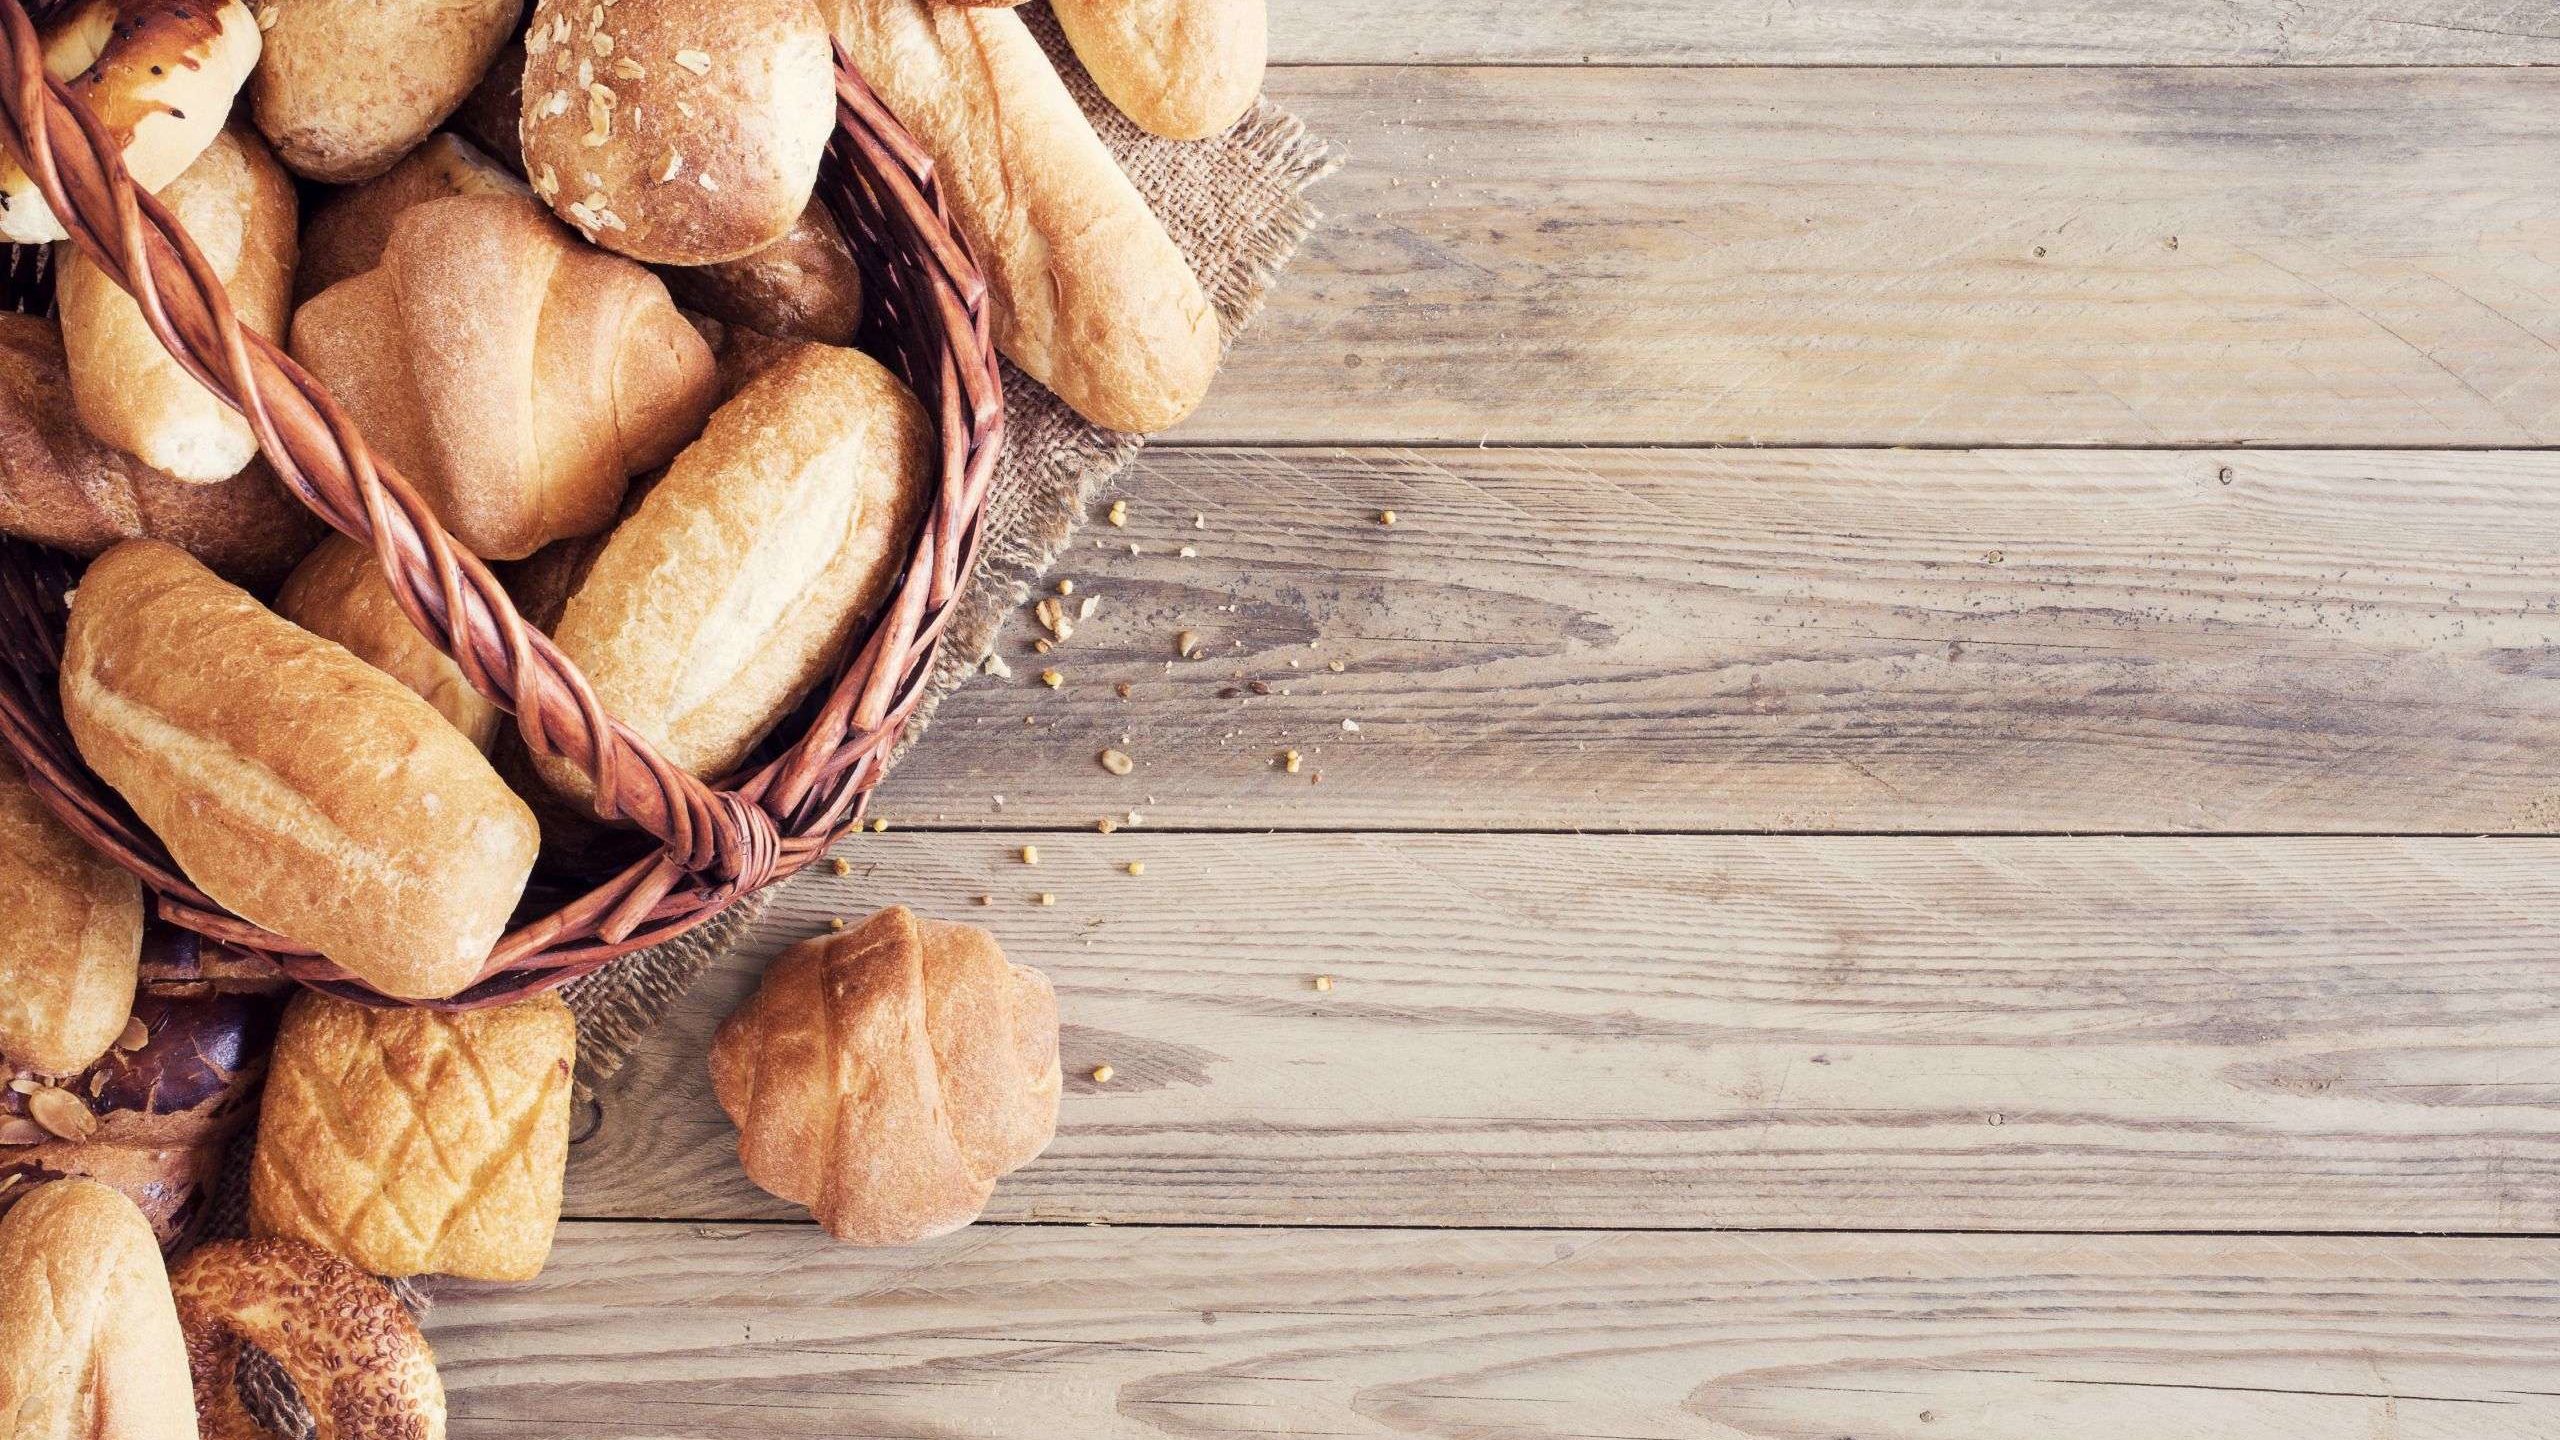 Selection of bread rolls in a bread basket